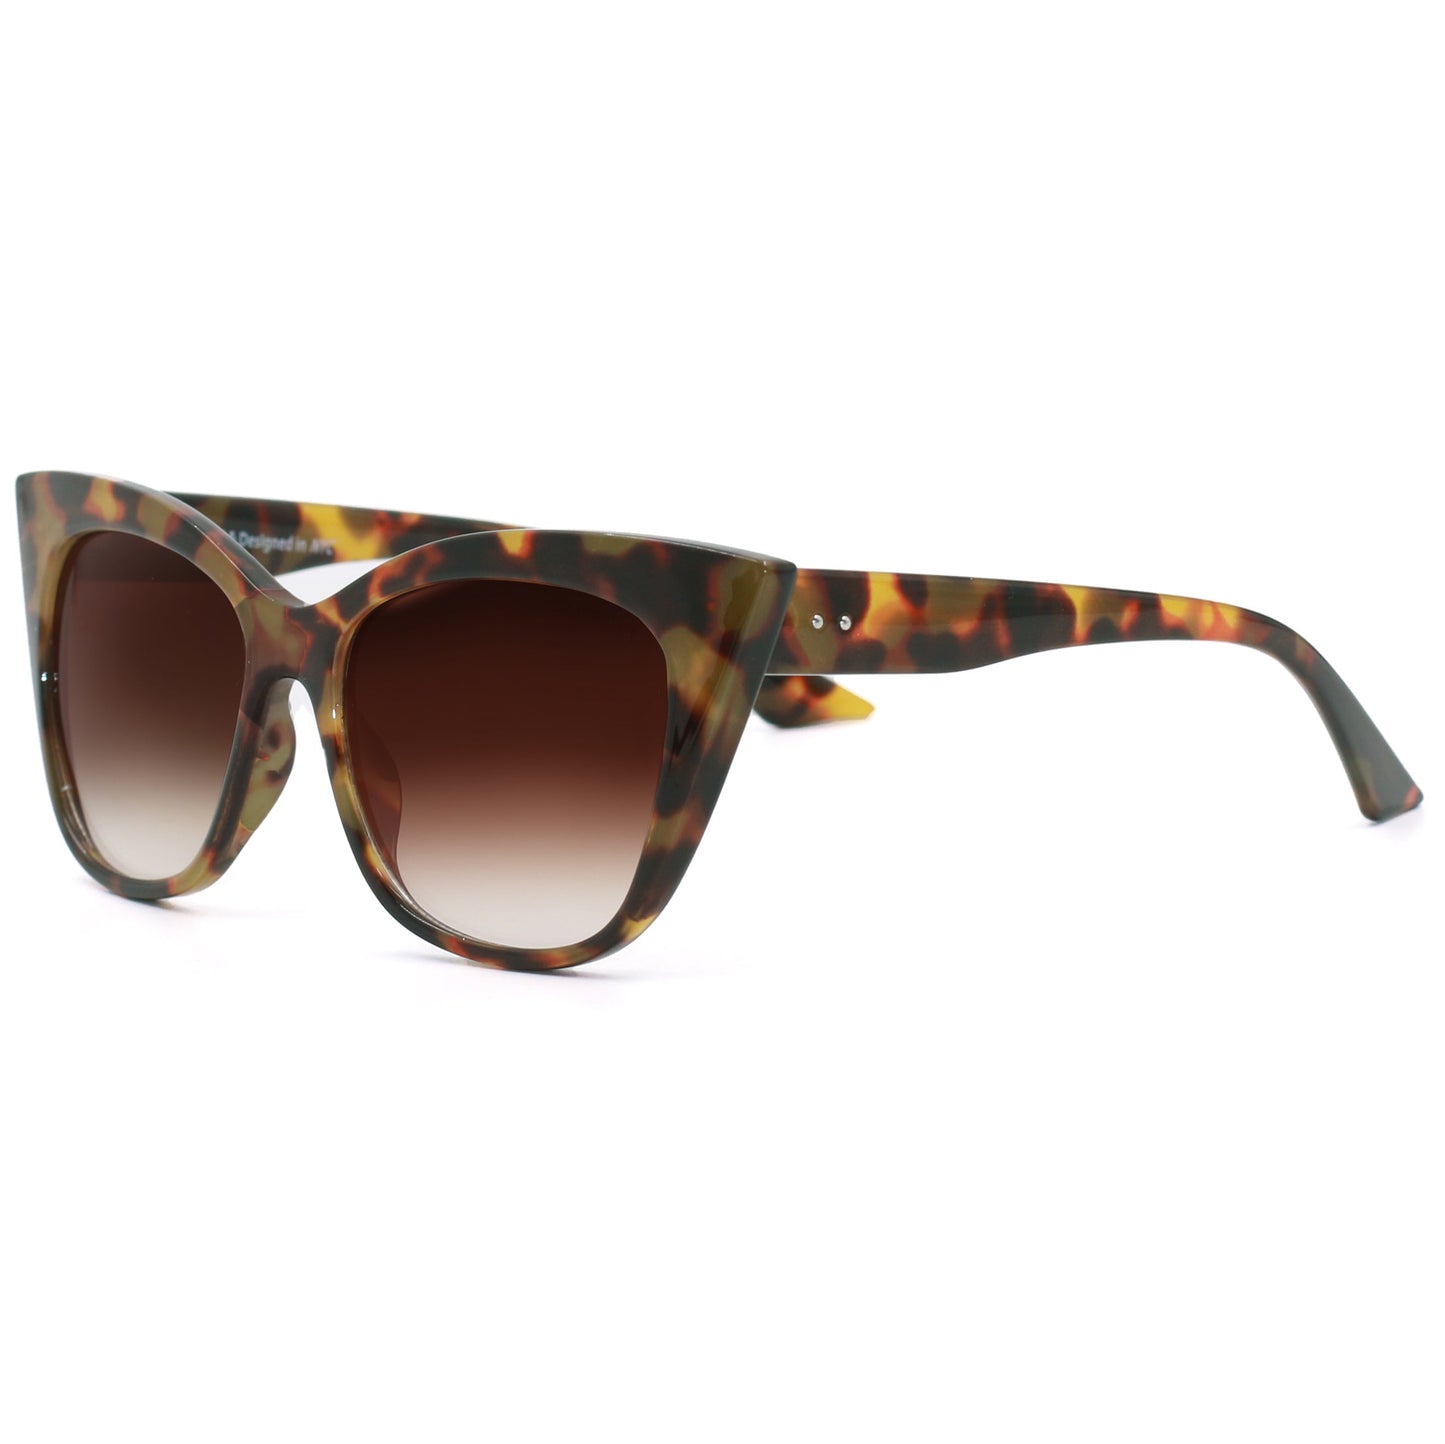 TopFoxx- Venice Cat Eye - Tortoise Shell Cat Eye Oversized Sunglasses for Women - Side Profile